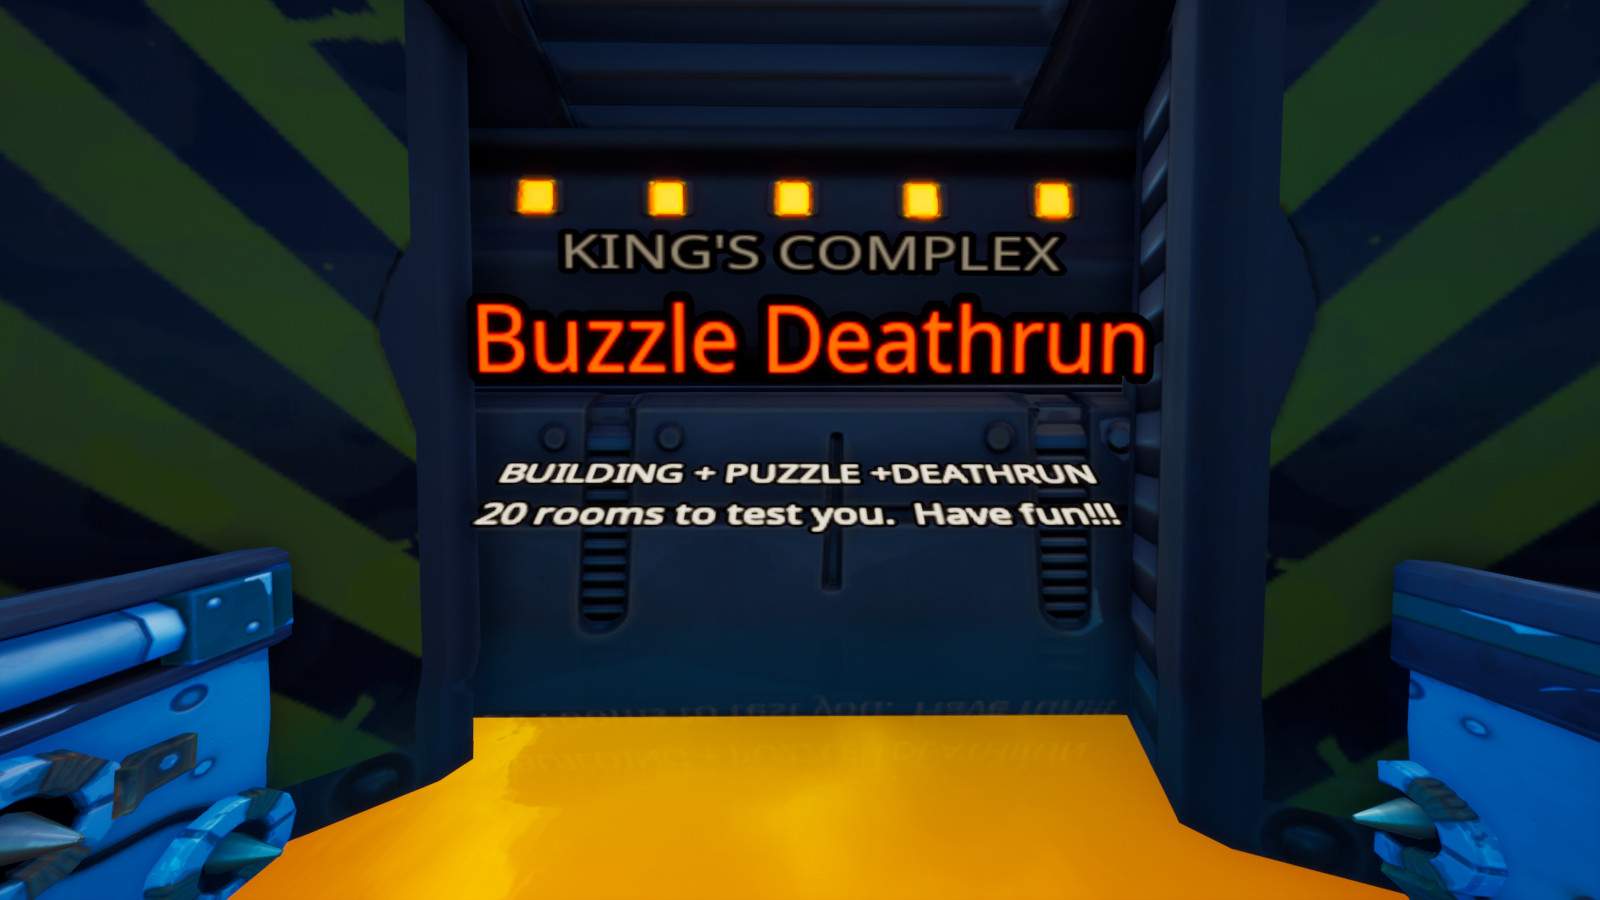 Buzzle Deathrun